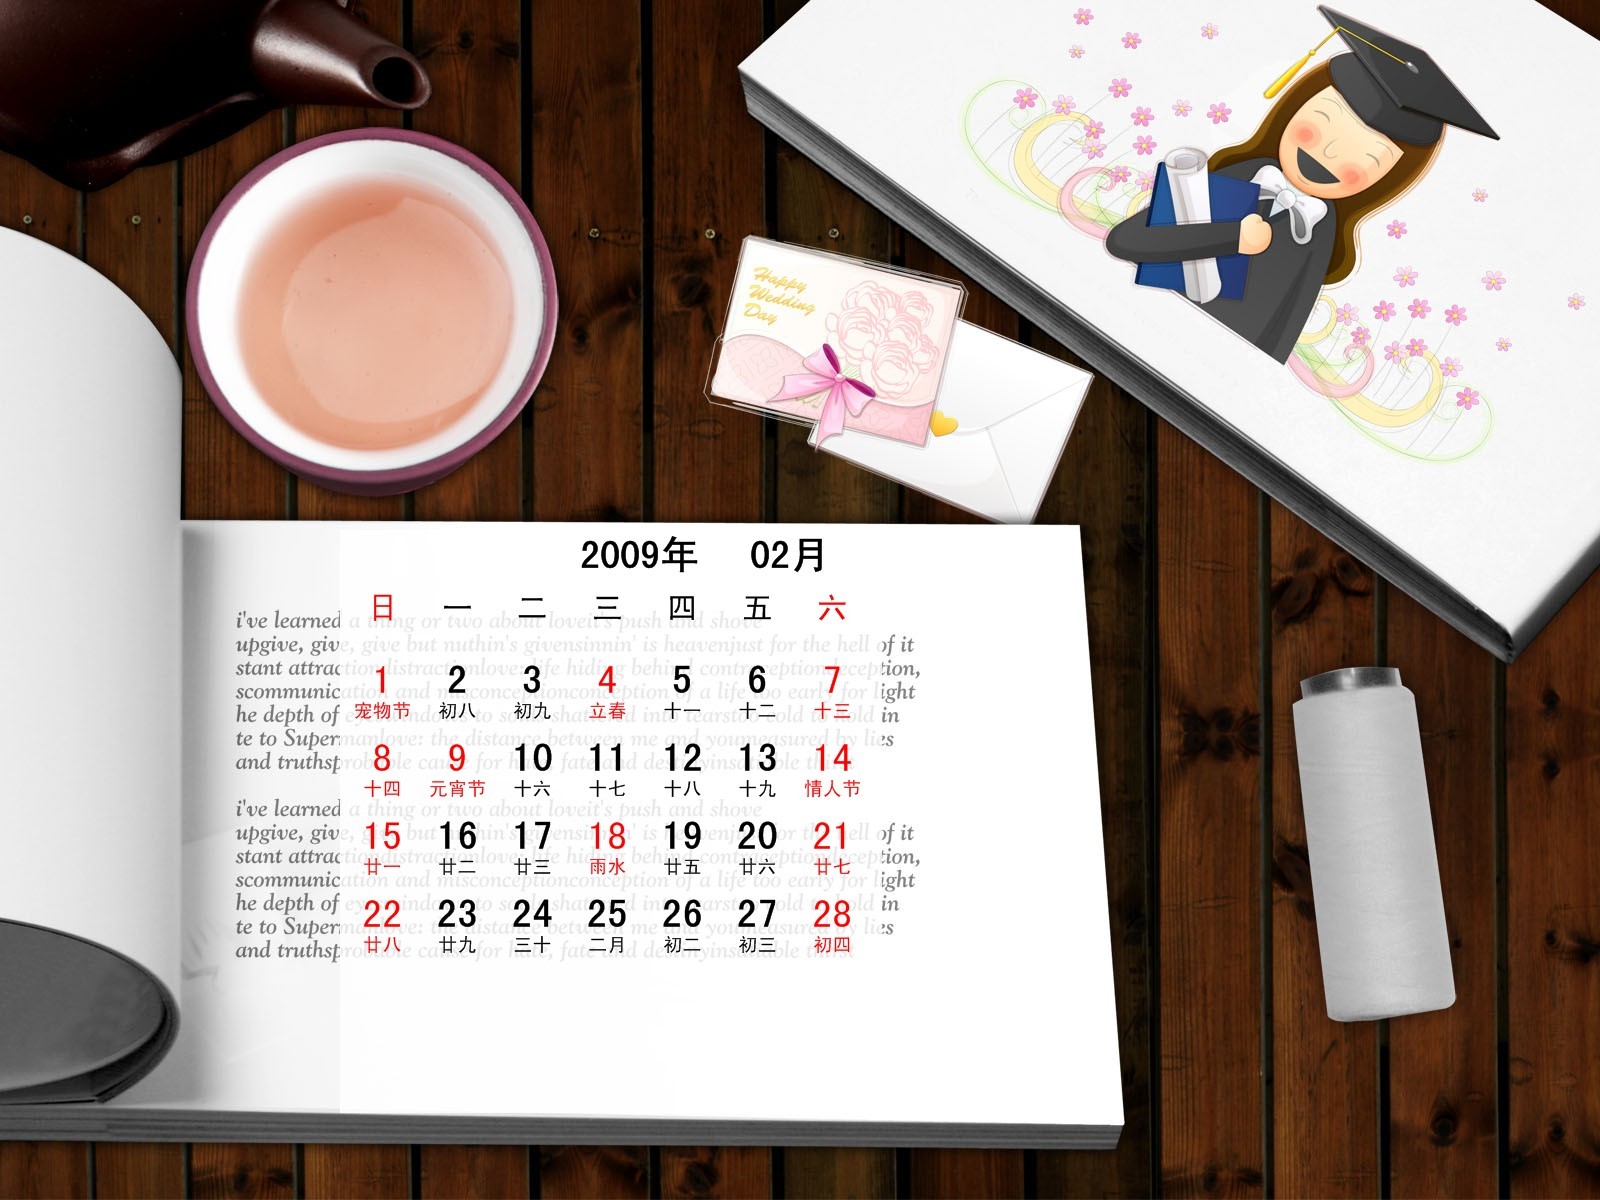 PaperArt 09 años en el fondo de pantalla de calendario febrero #31 - 1600x1200